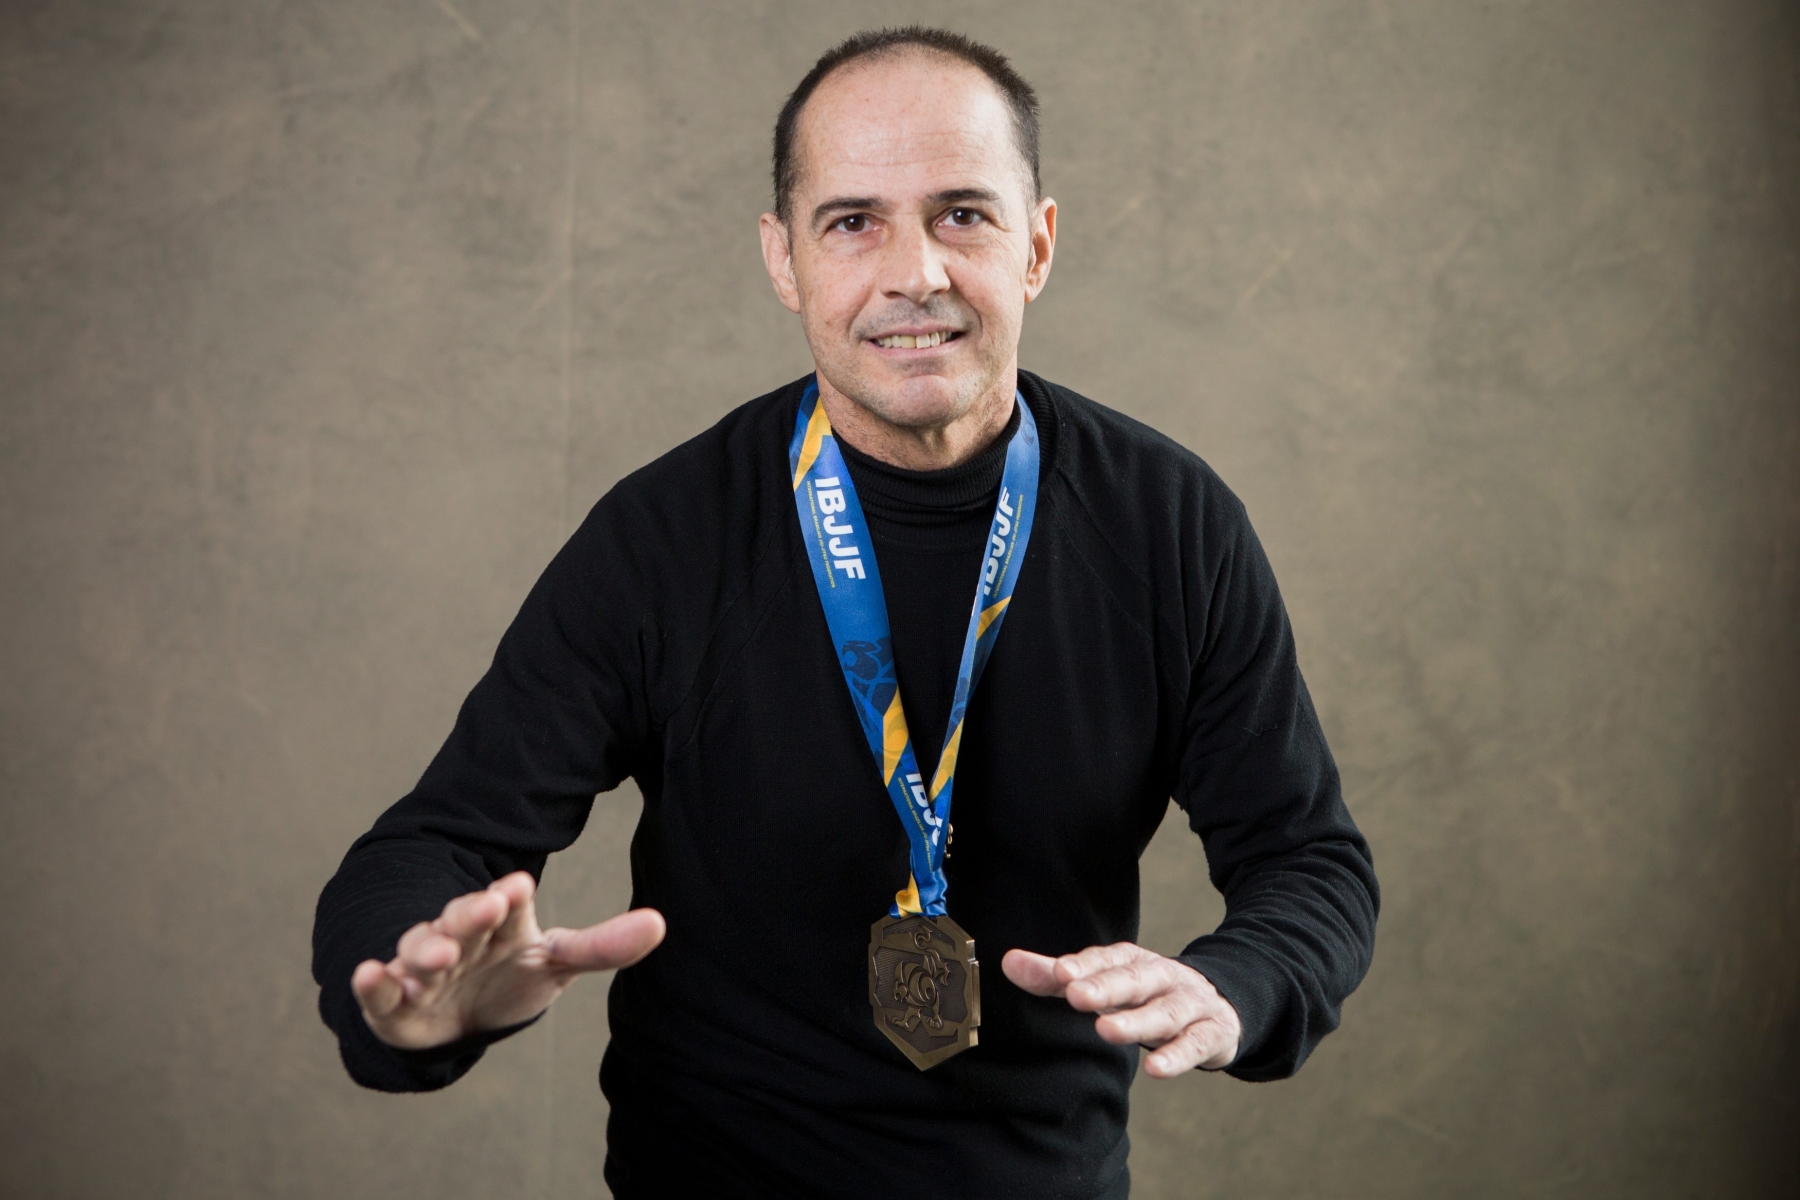 Nyon, mardi 2 février 2016

Portrait de Gilson Farias, professeur du club de jiu-jitsu brésilien de Morges et médaillé bronze aux championnats d'Europe à Lisbonne



Sigfredo Haro Portrait Gilson Farias, Nyon